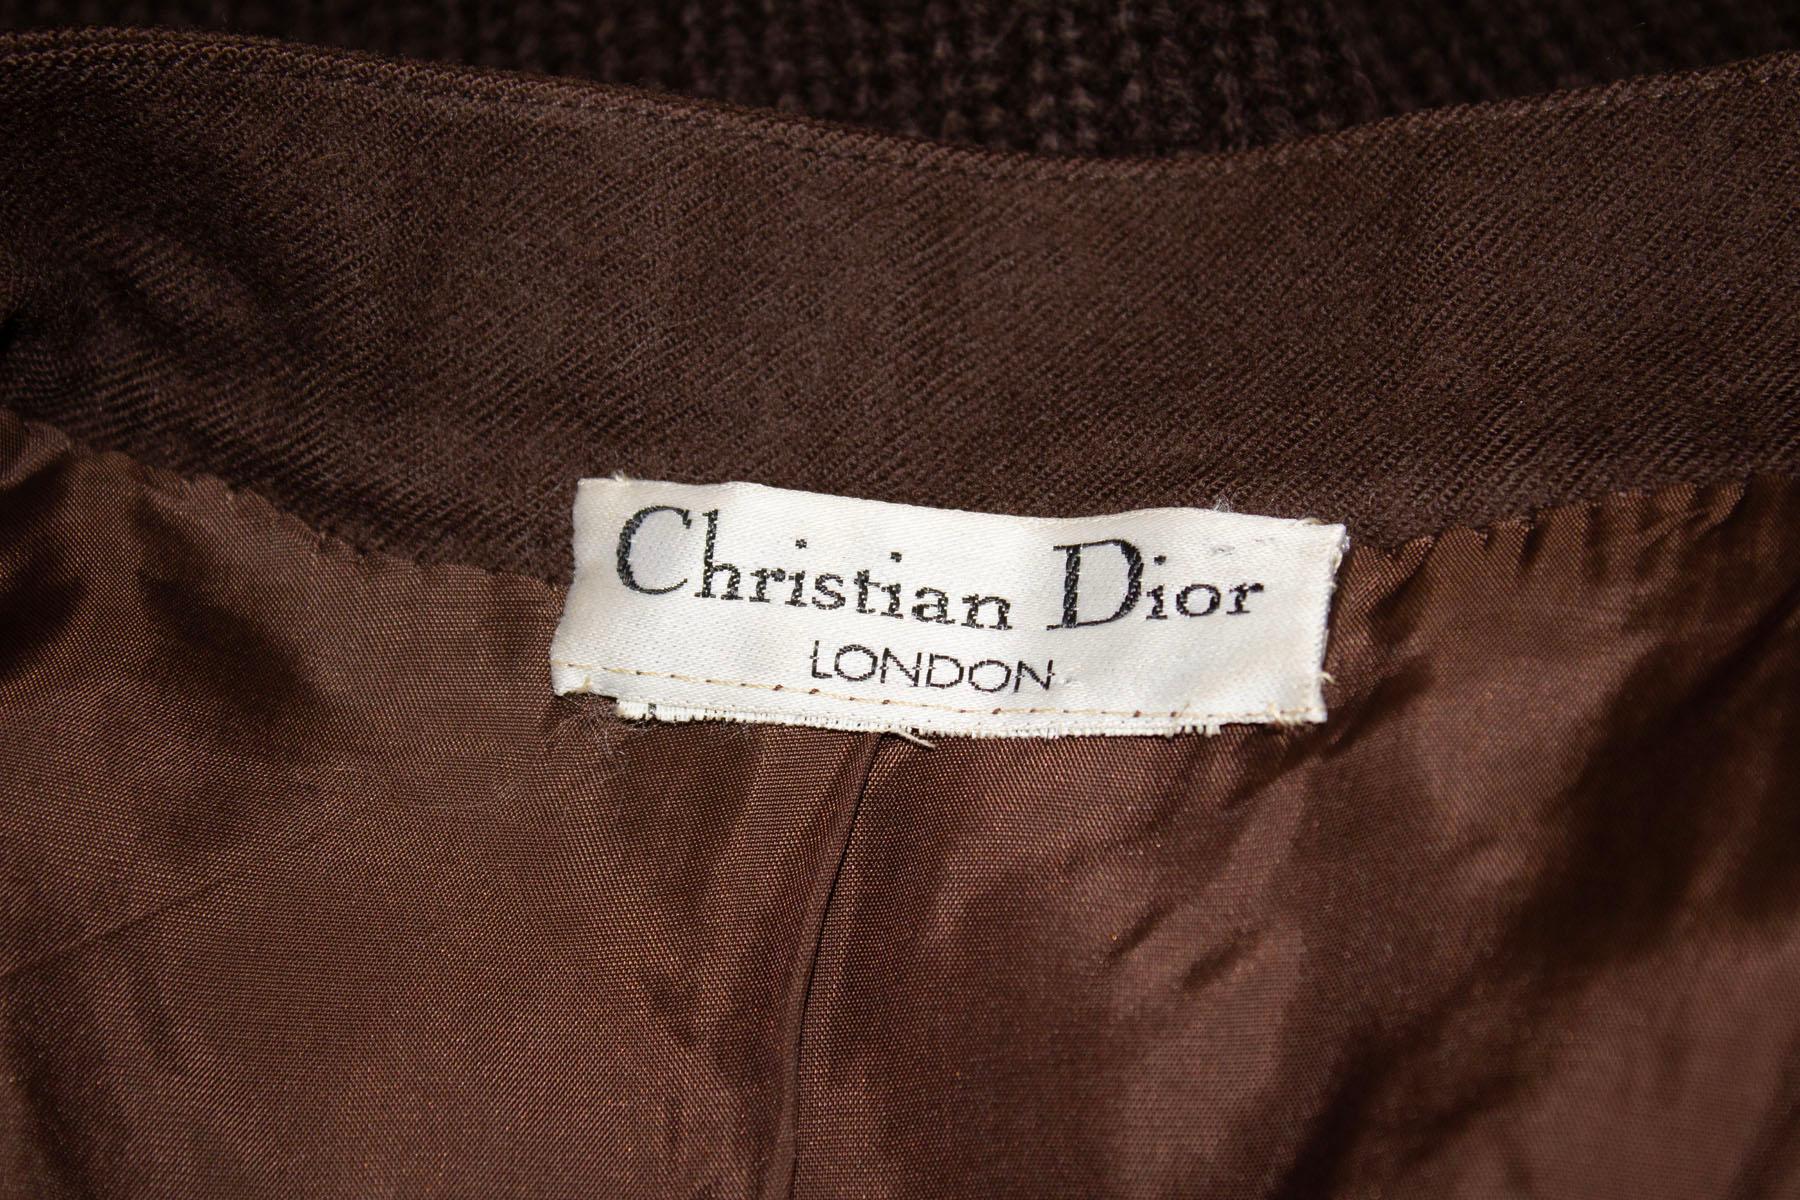 Une superbe combinaison de jupe et de veste de Christian Dior, Londres. La veste est dotée d'une ouverture boutonnée sur le devant, d'un devant, d'un dos et de poignets tricotés. Le reste de la veste est en laine. La jupe est en laine, entièrement